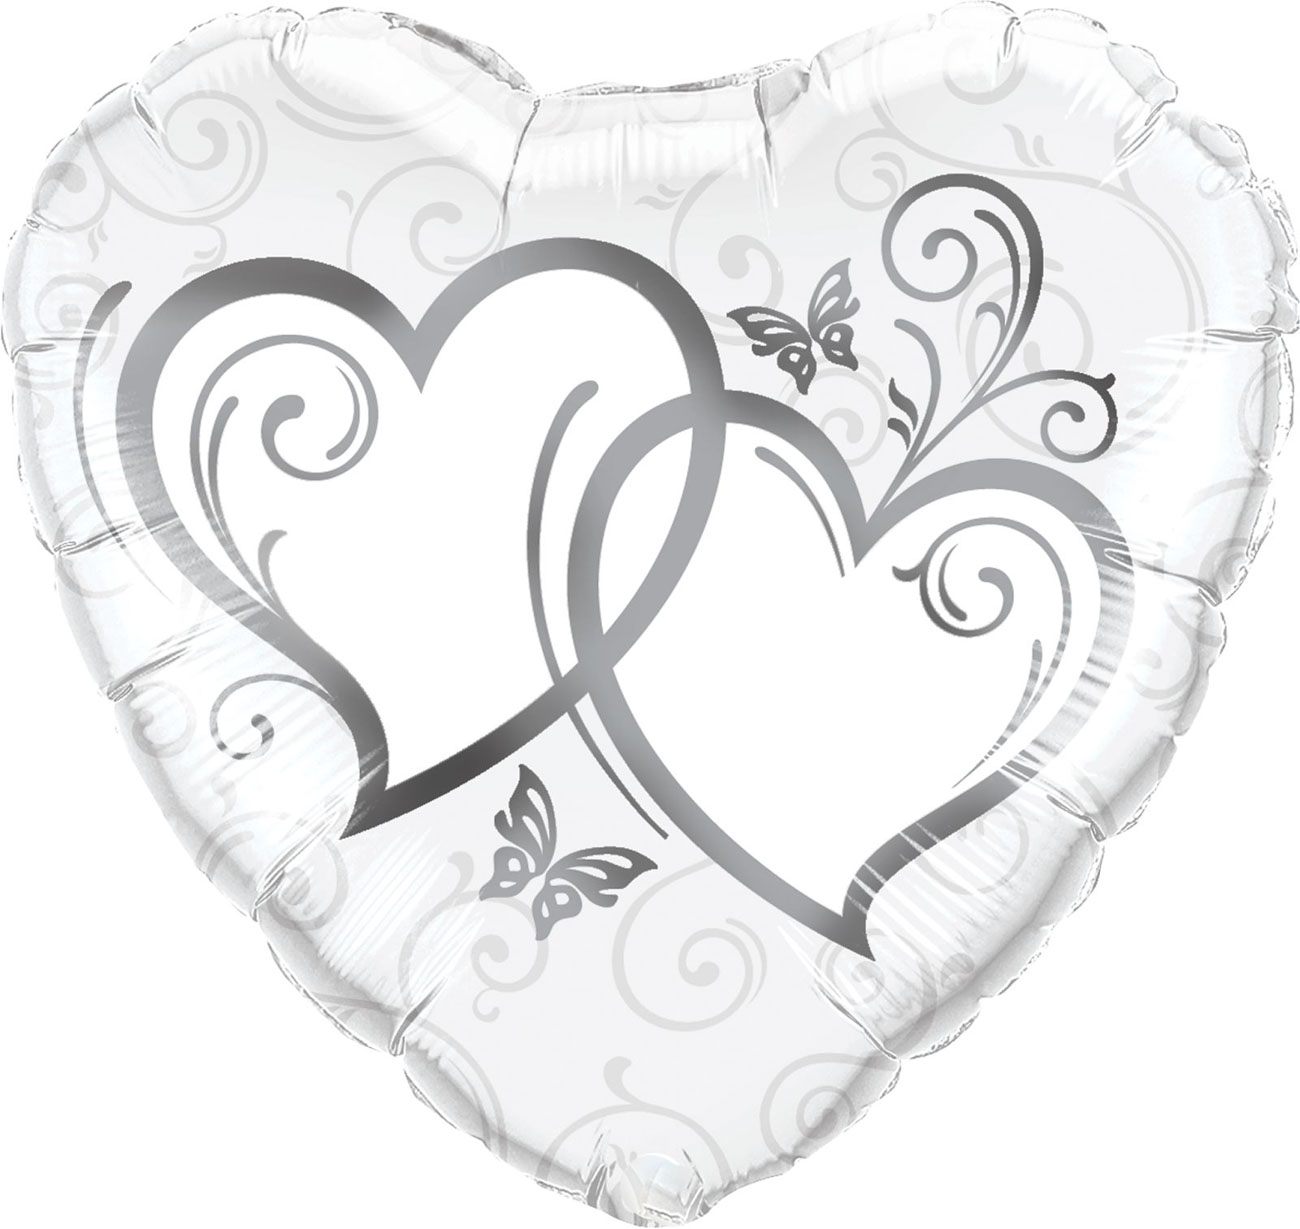 Fóliový balonek ve tvaru srdce, stříbrná - BL02-5903